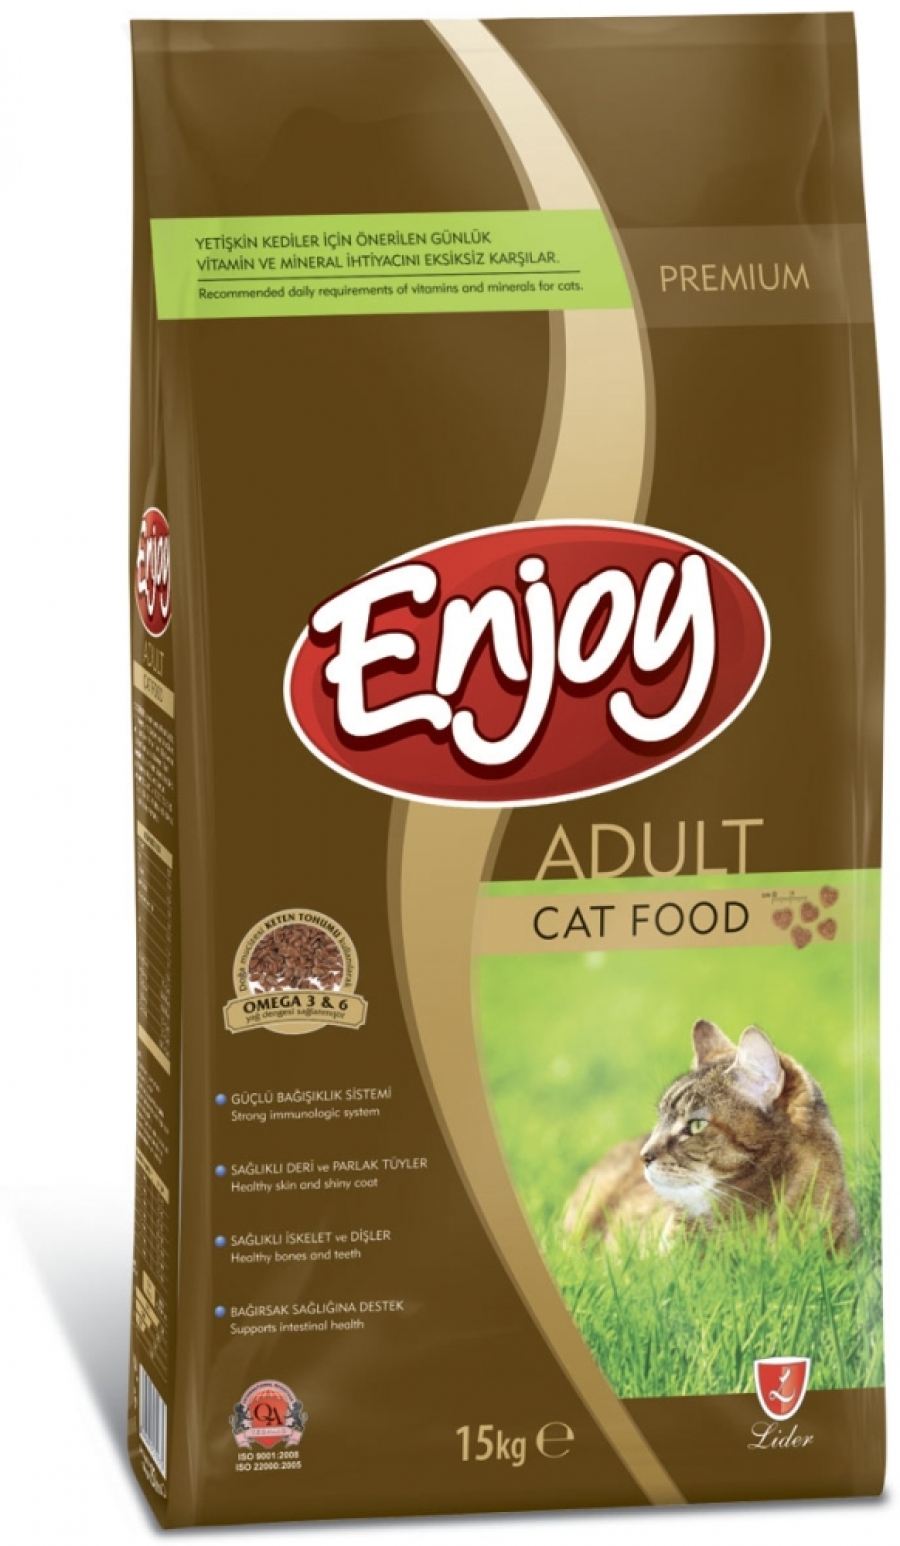 ENJOY CAT FOOD - PREMIUM 15 KG'LIK PAKET